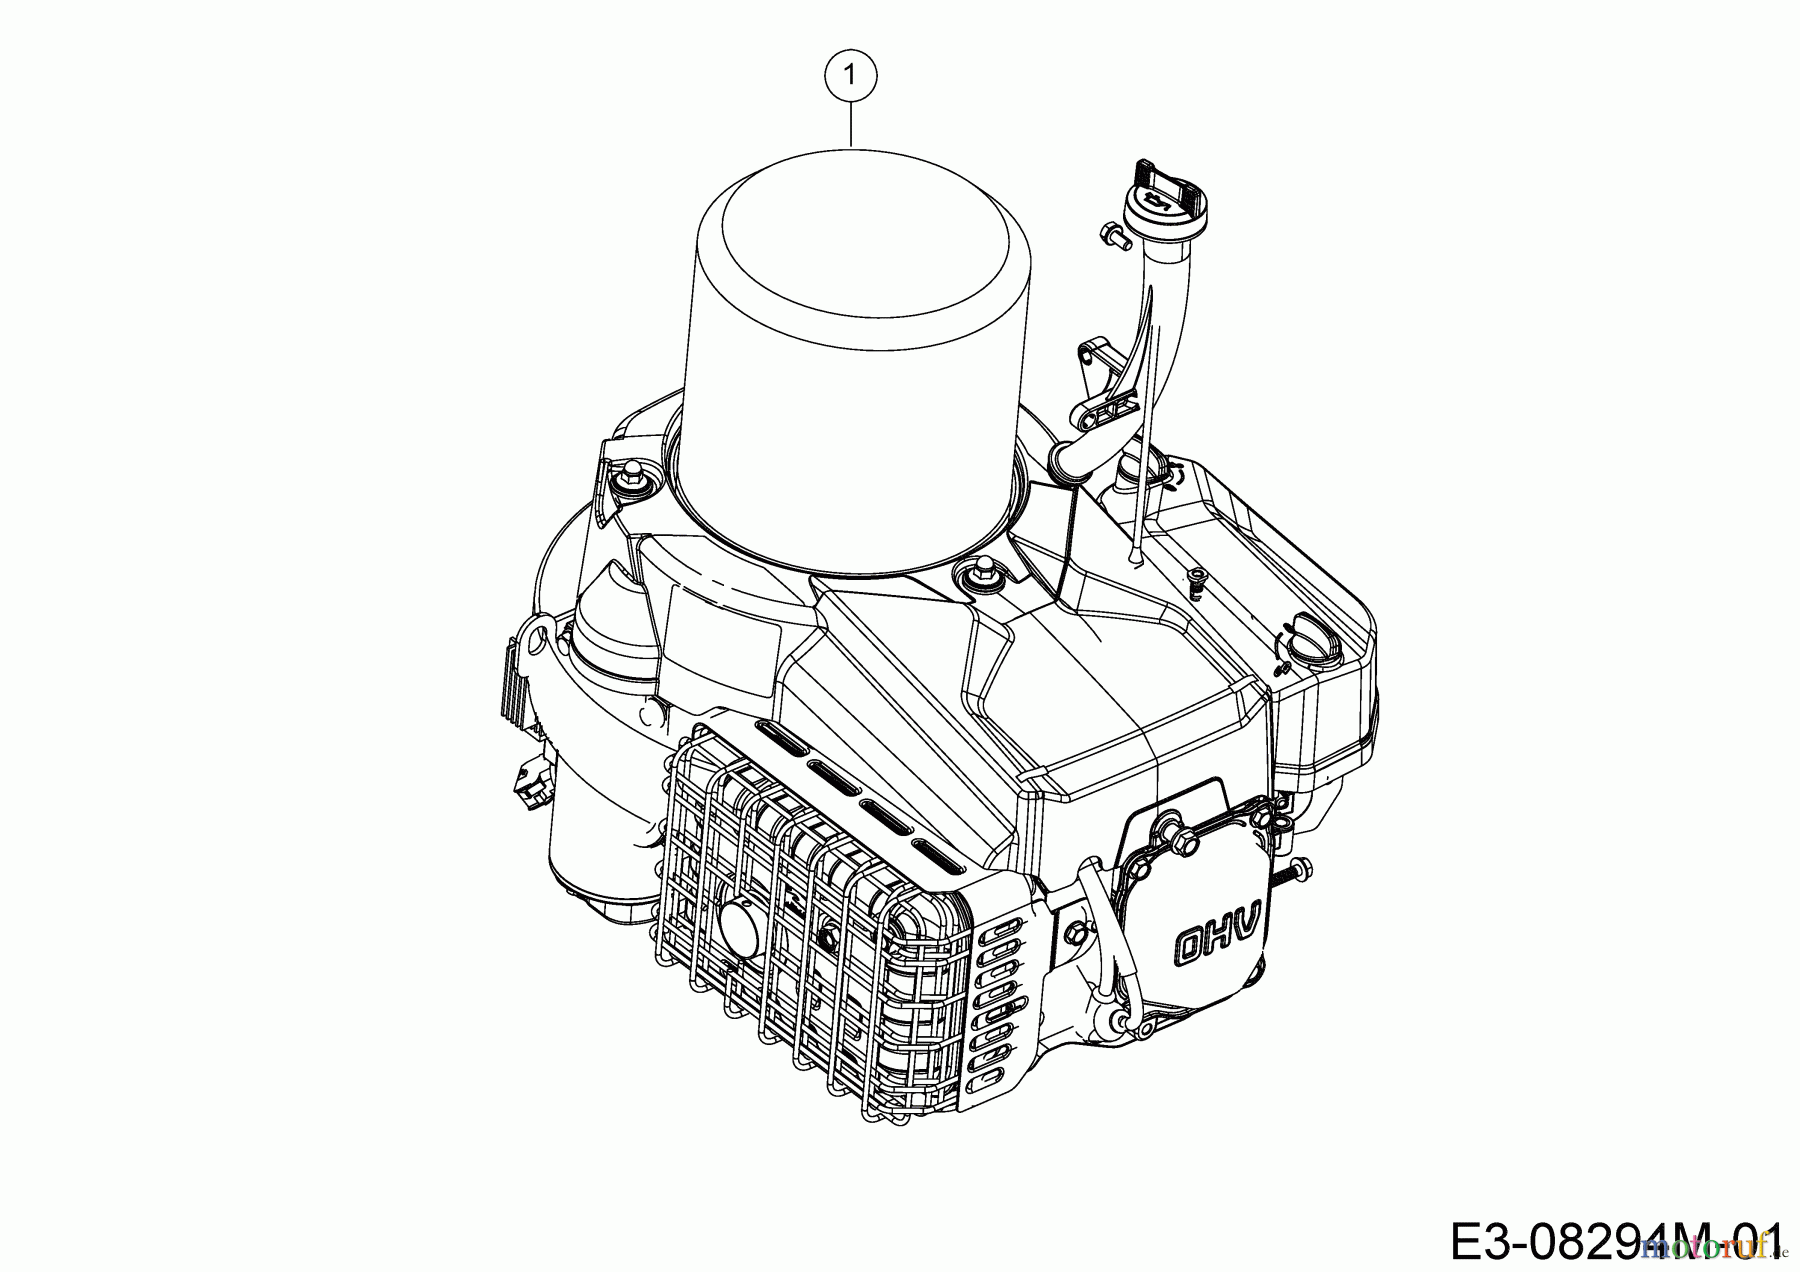  Bestgreen Lawn tractors BG 76 SM 13C726JD655  (2020) Engine